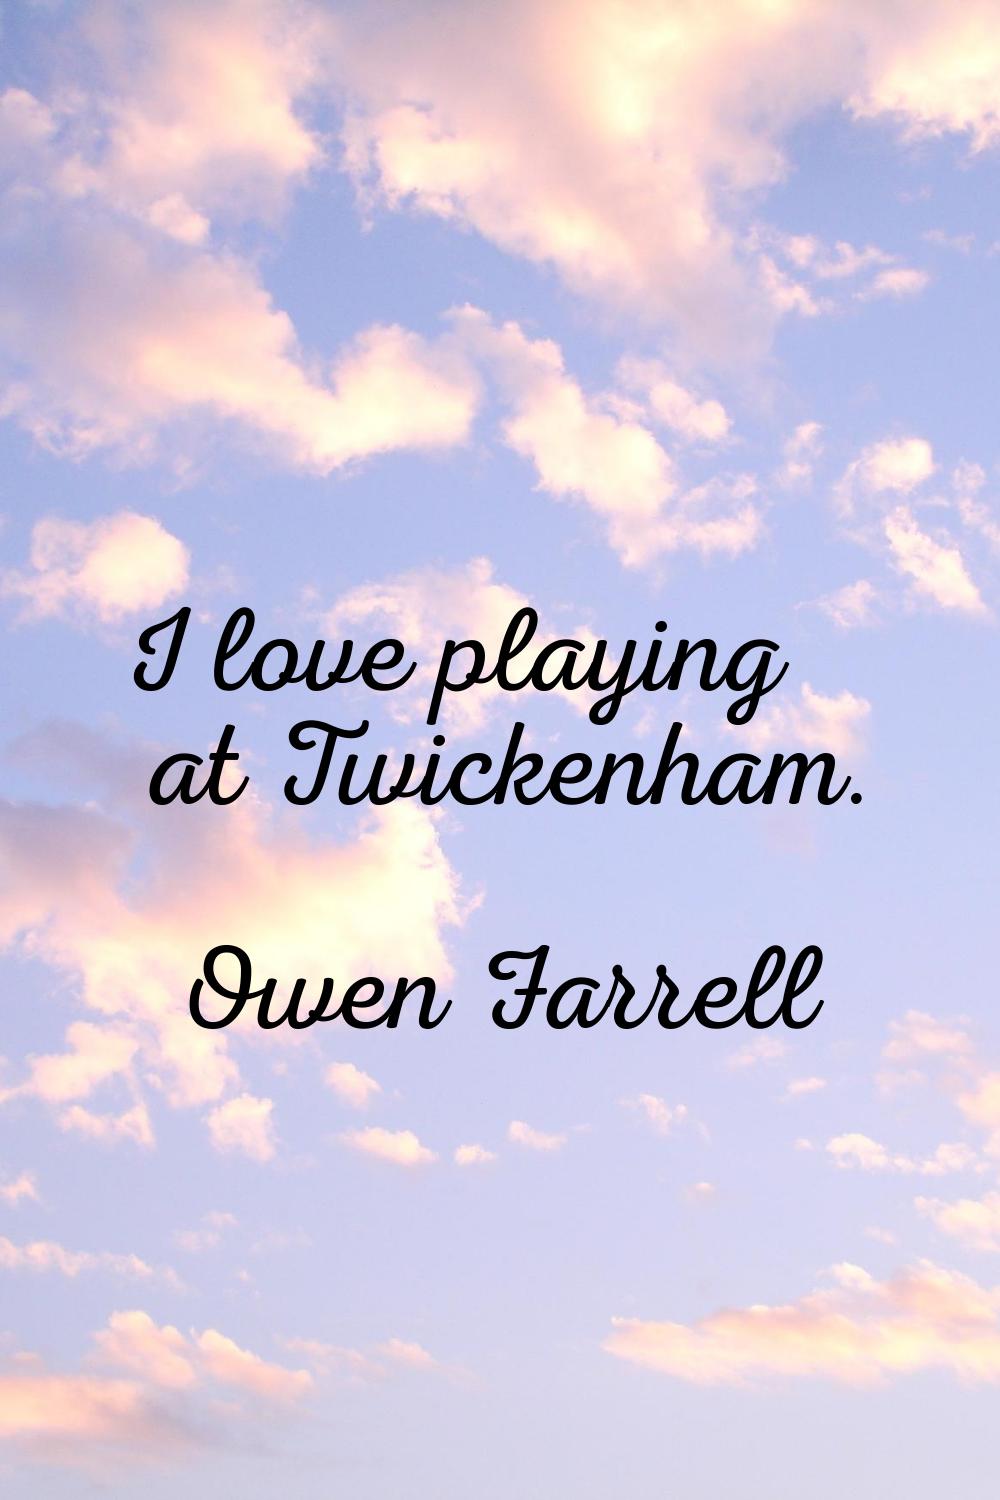 I love playing at Twickenham.